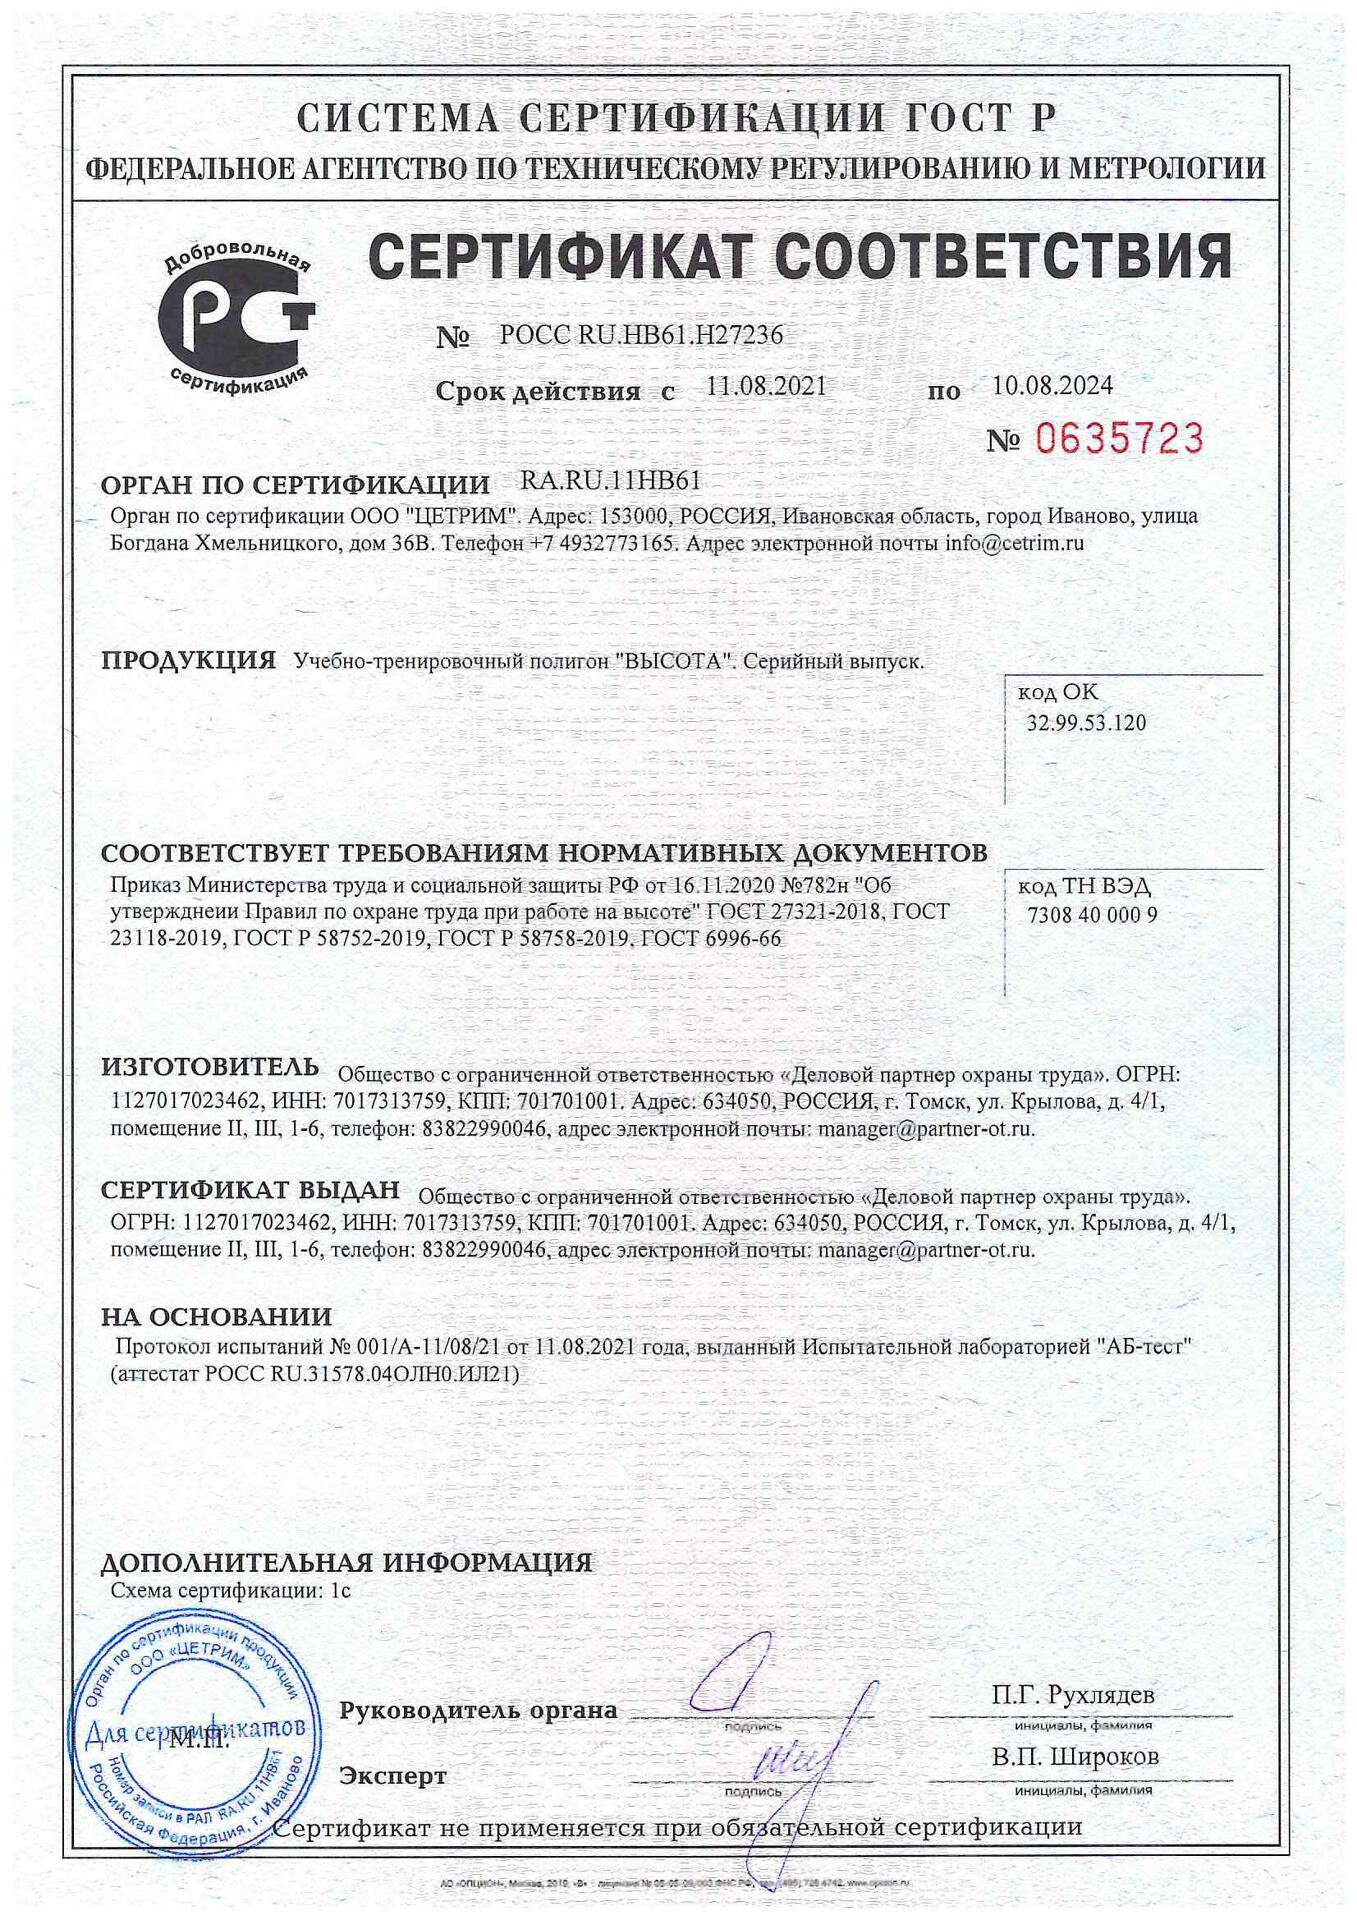 Добровольный сертификат соответствия на учебно-тренировочный полигон "ВЫСОТА"